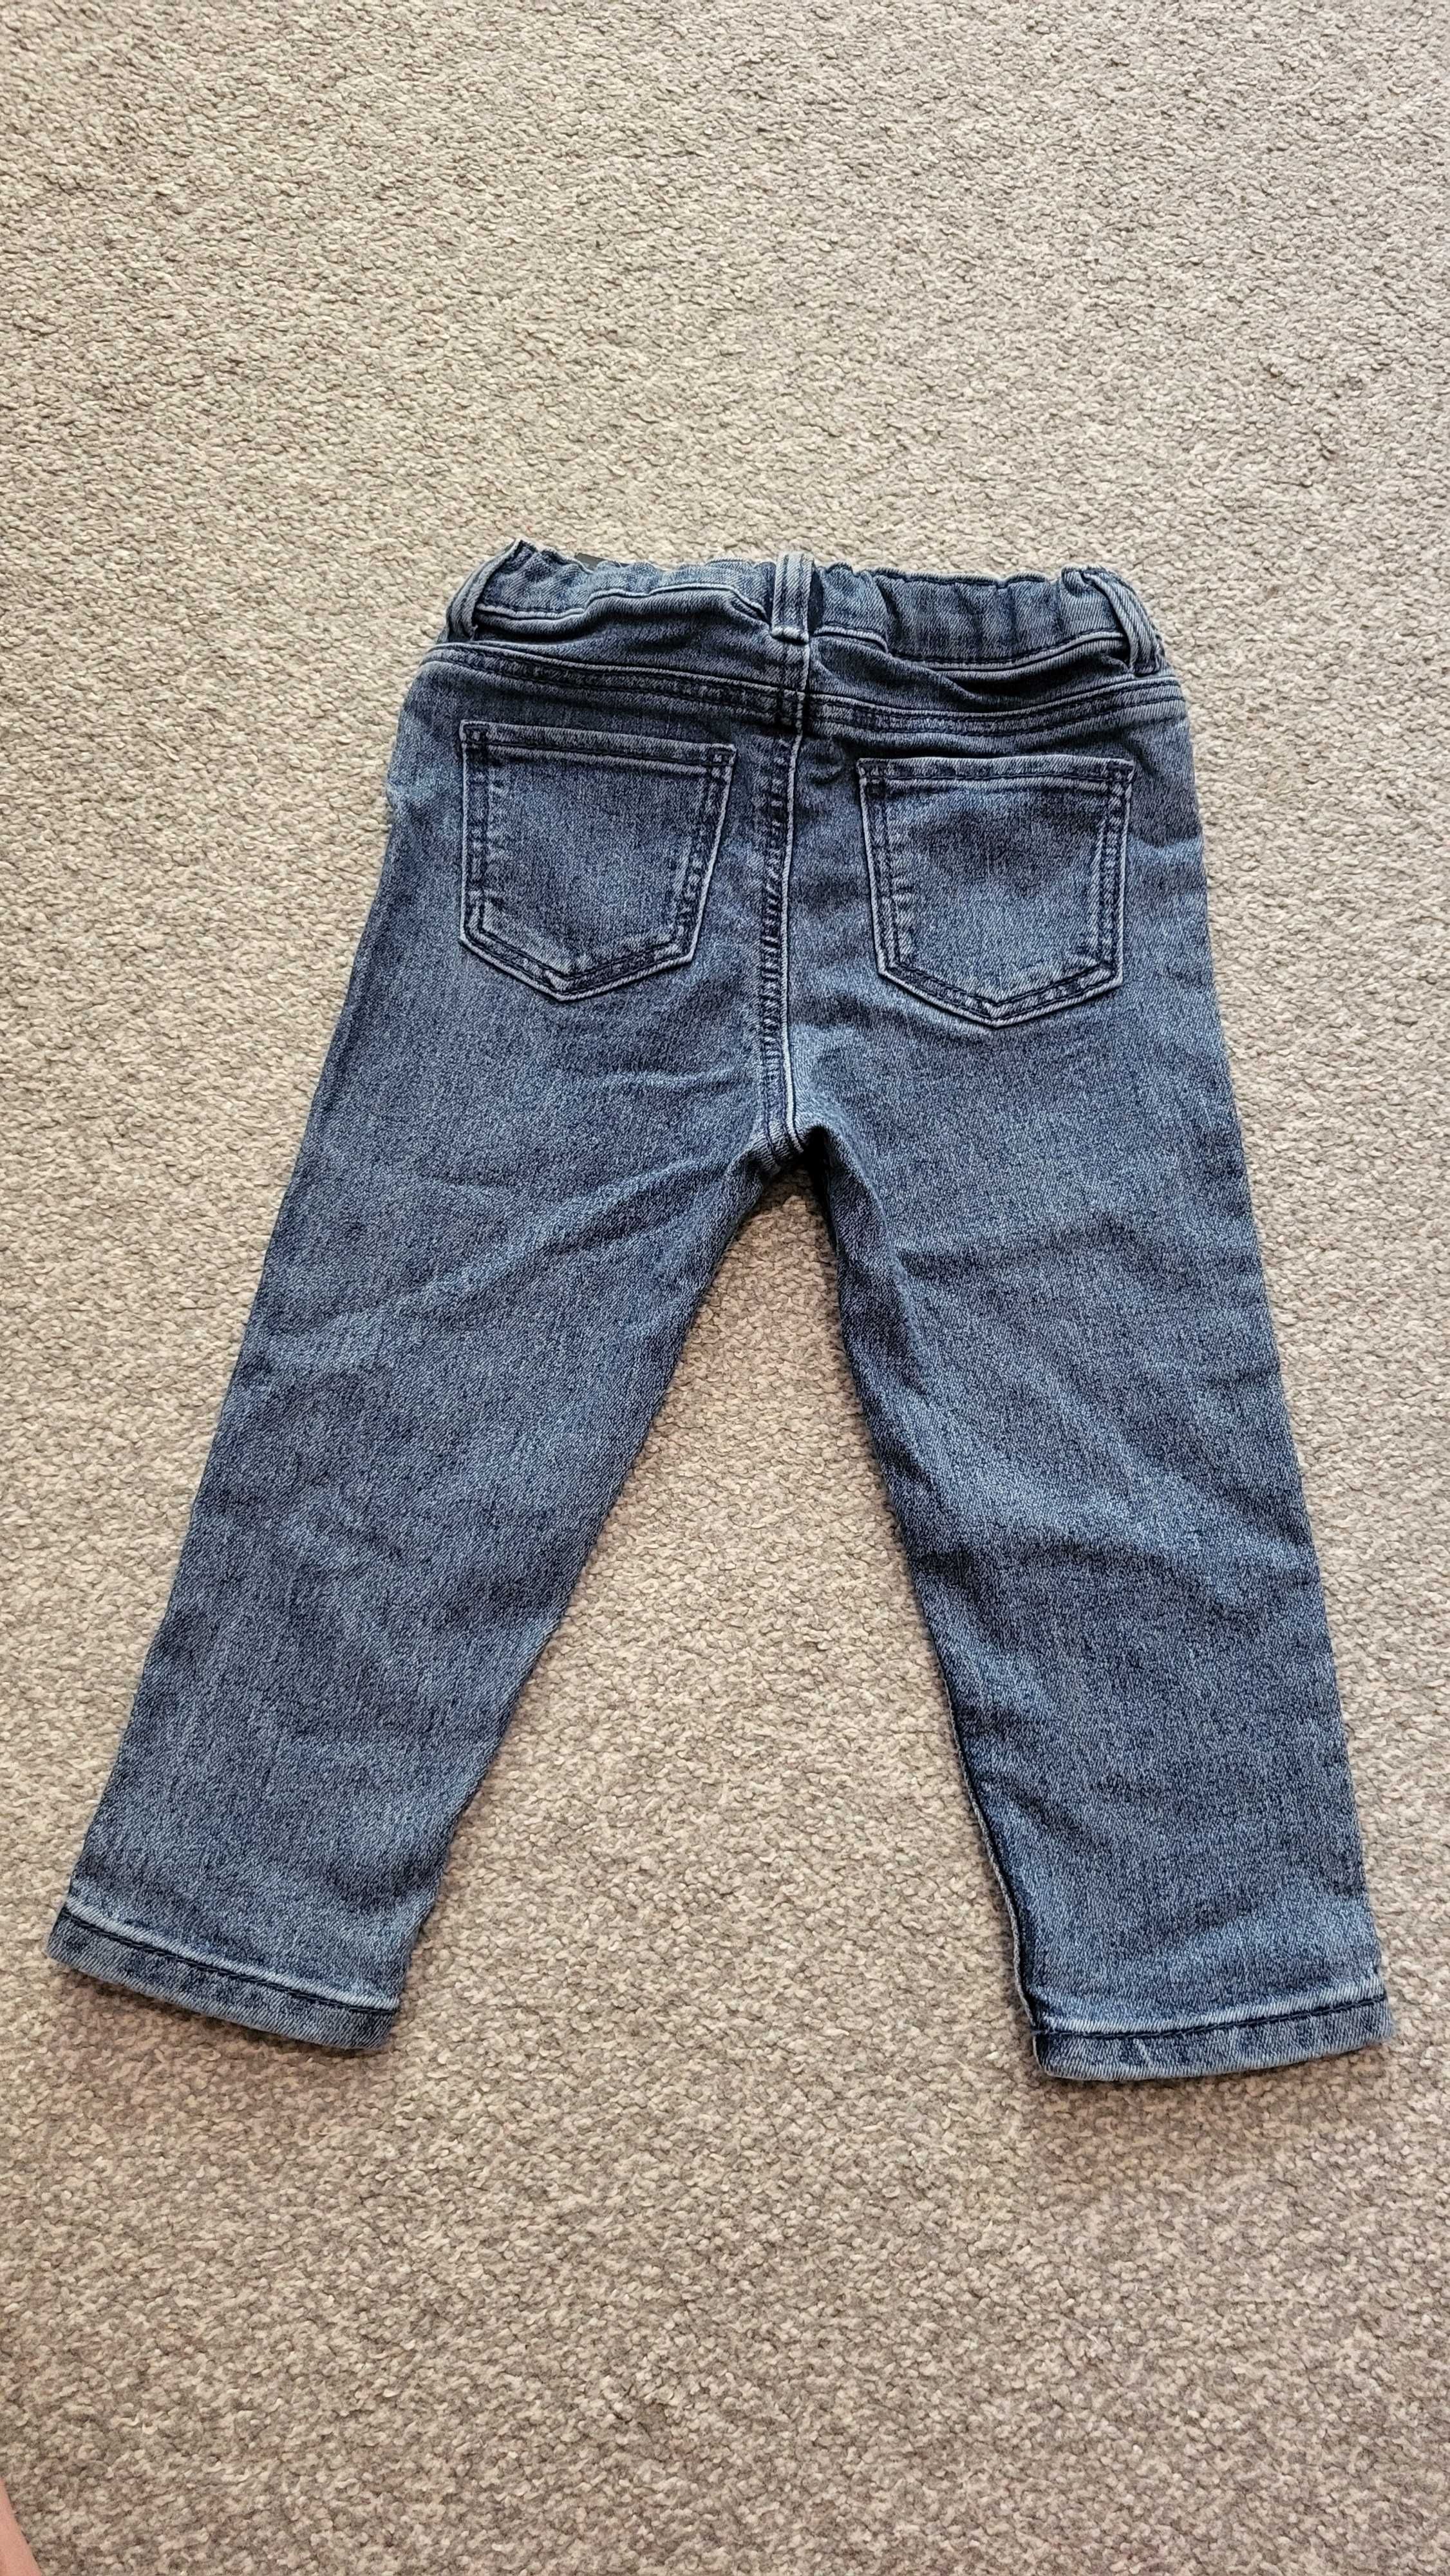 Jeansowy zestaw dla chłopca rozmiar 80, spodnie h&m koszula Cool Club